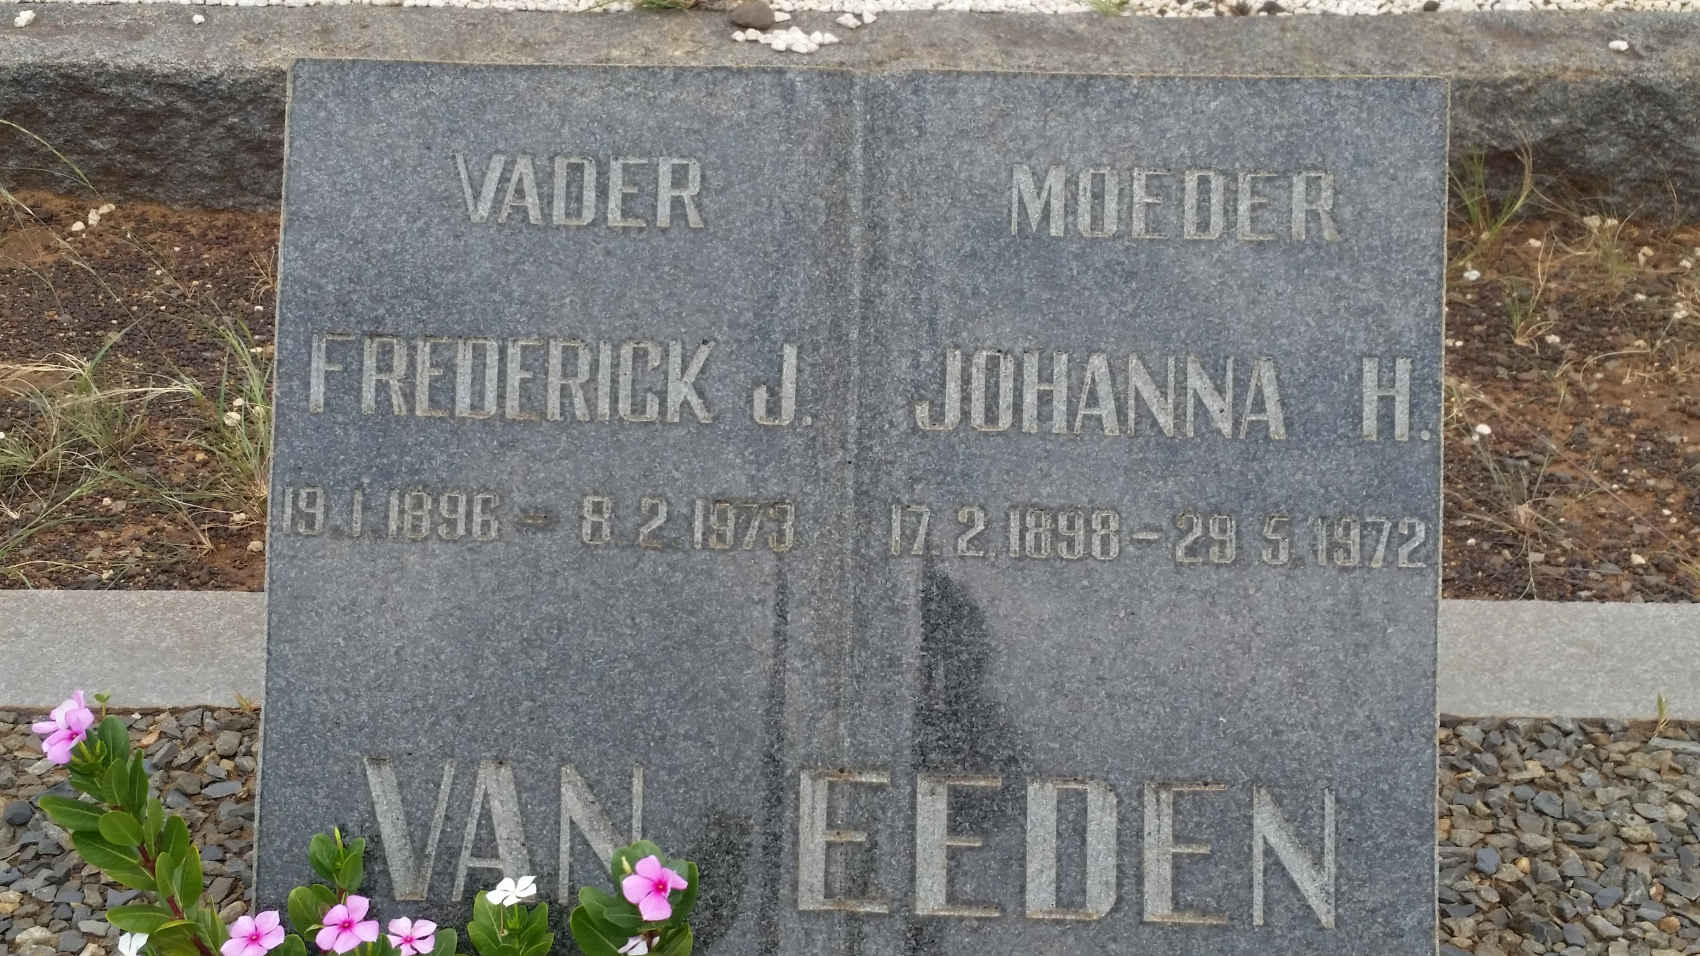 EEDEN Gert J., van 1896-1973 & Johanna H. 1898-1972